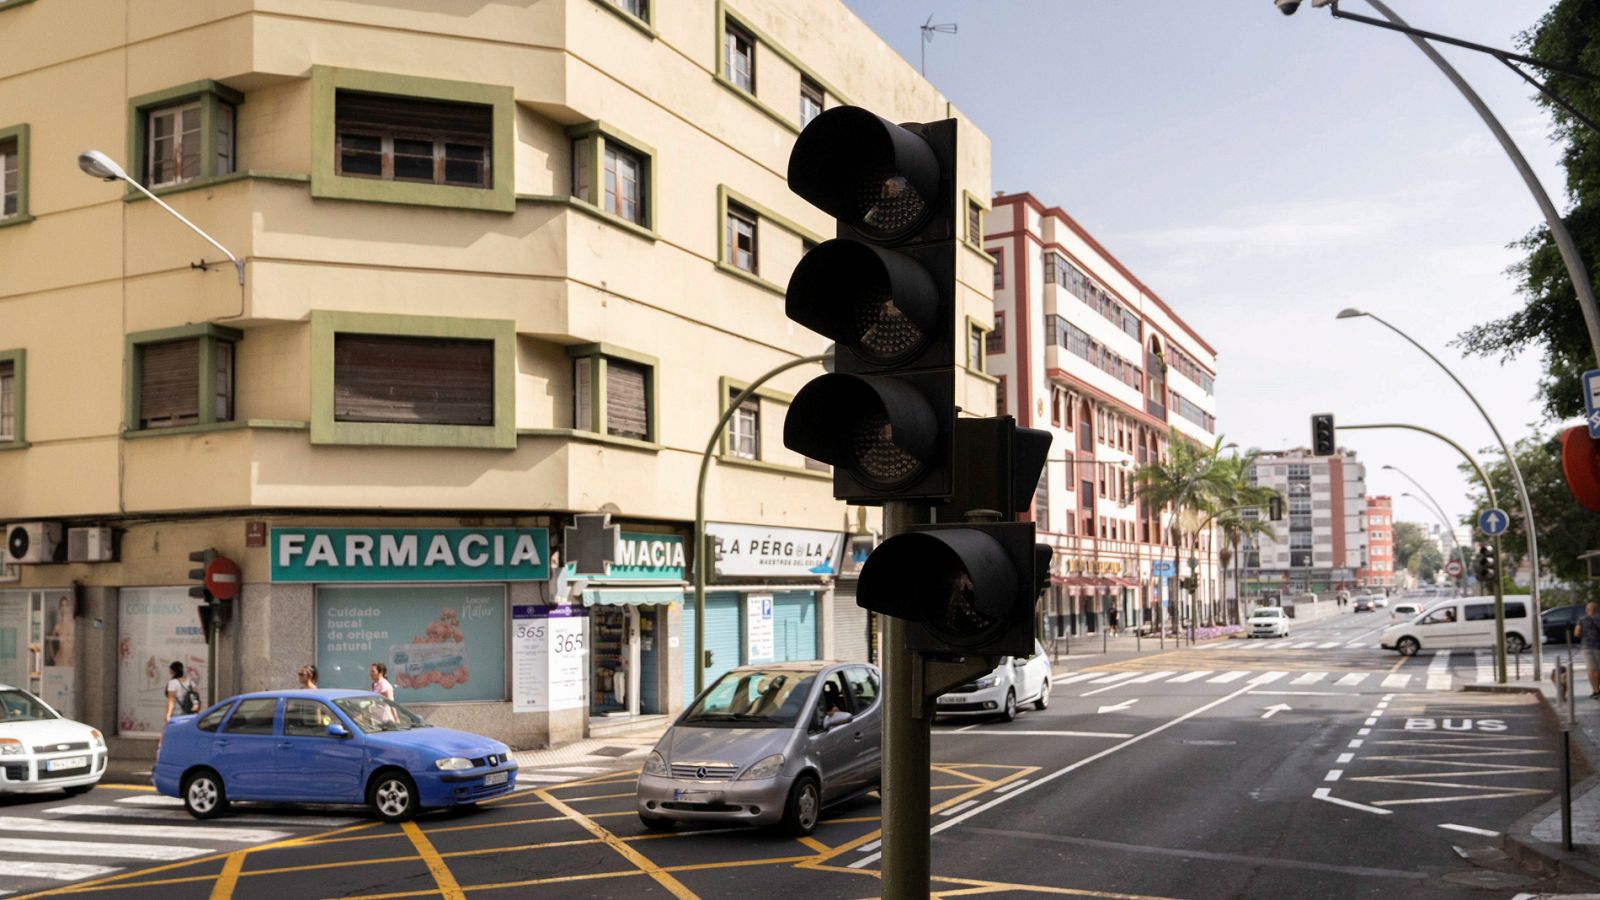 Canarias: Un apagón del suministro eléctrico afecta a toda la isla de Tenerife - RTVE.es